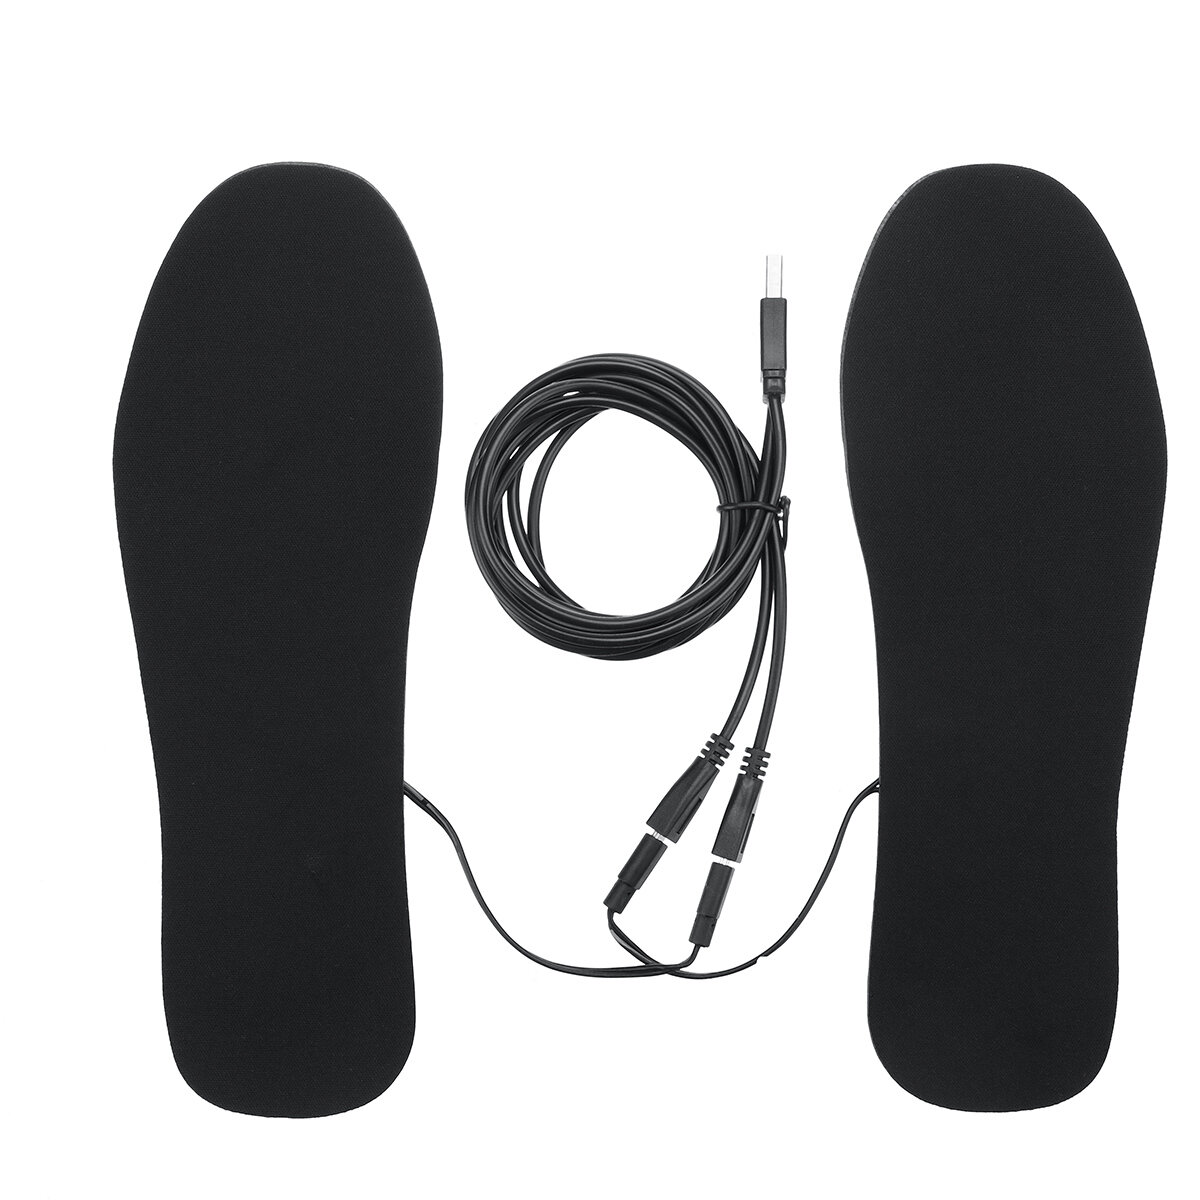 USB電気加熱シューズインソール、電気フィルム足ヒーター、ウィンタースポーツ用の暖かい靴下、アウトドア用アクセサリー。